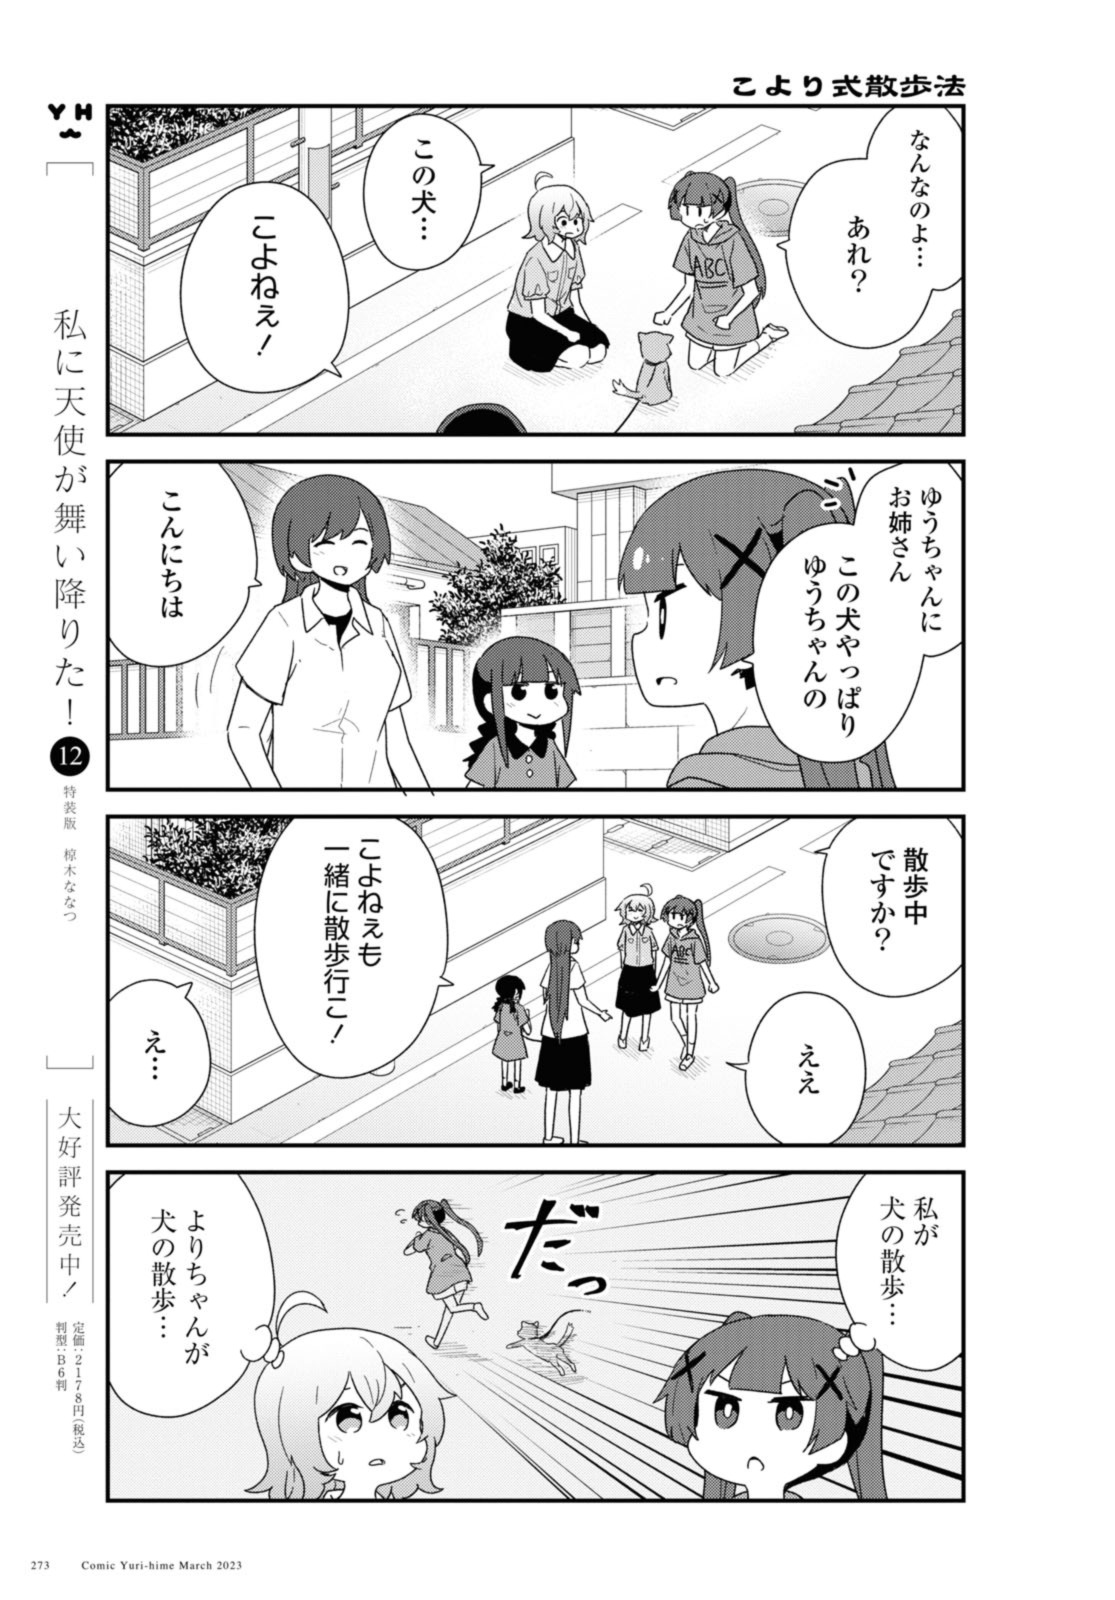 Watashi ni Tenshi ga Maiorita! - Chapter 103 - Page 2